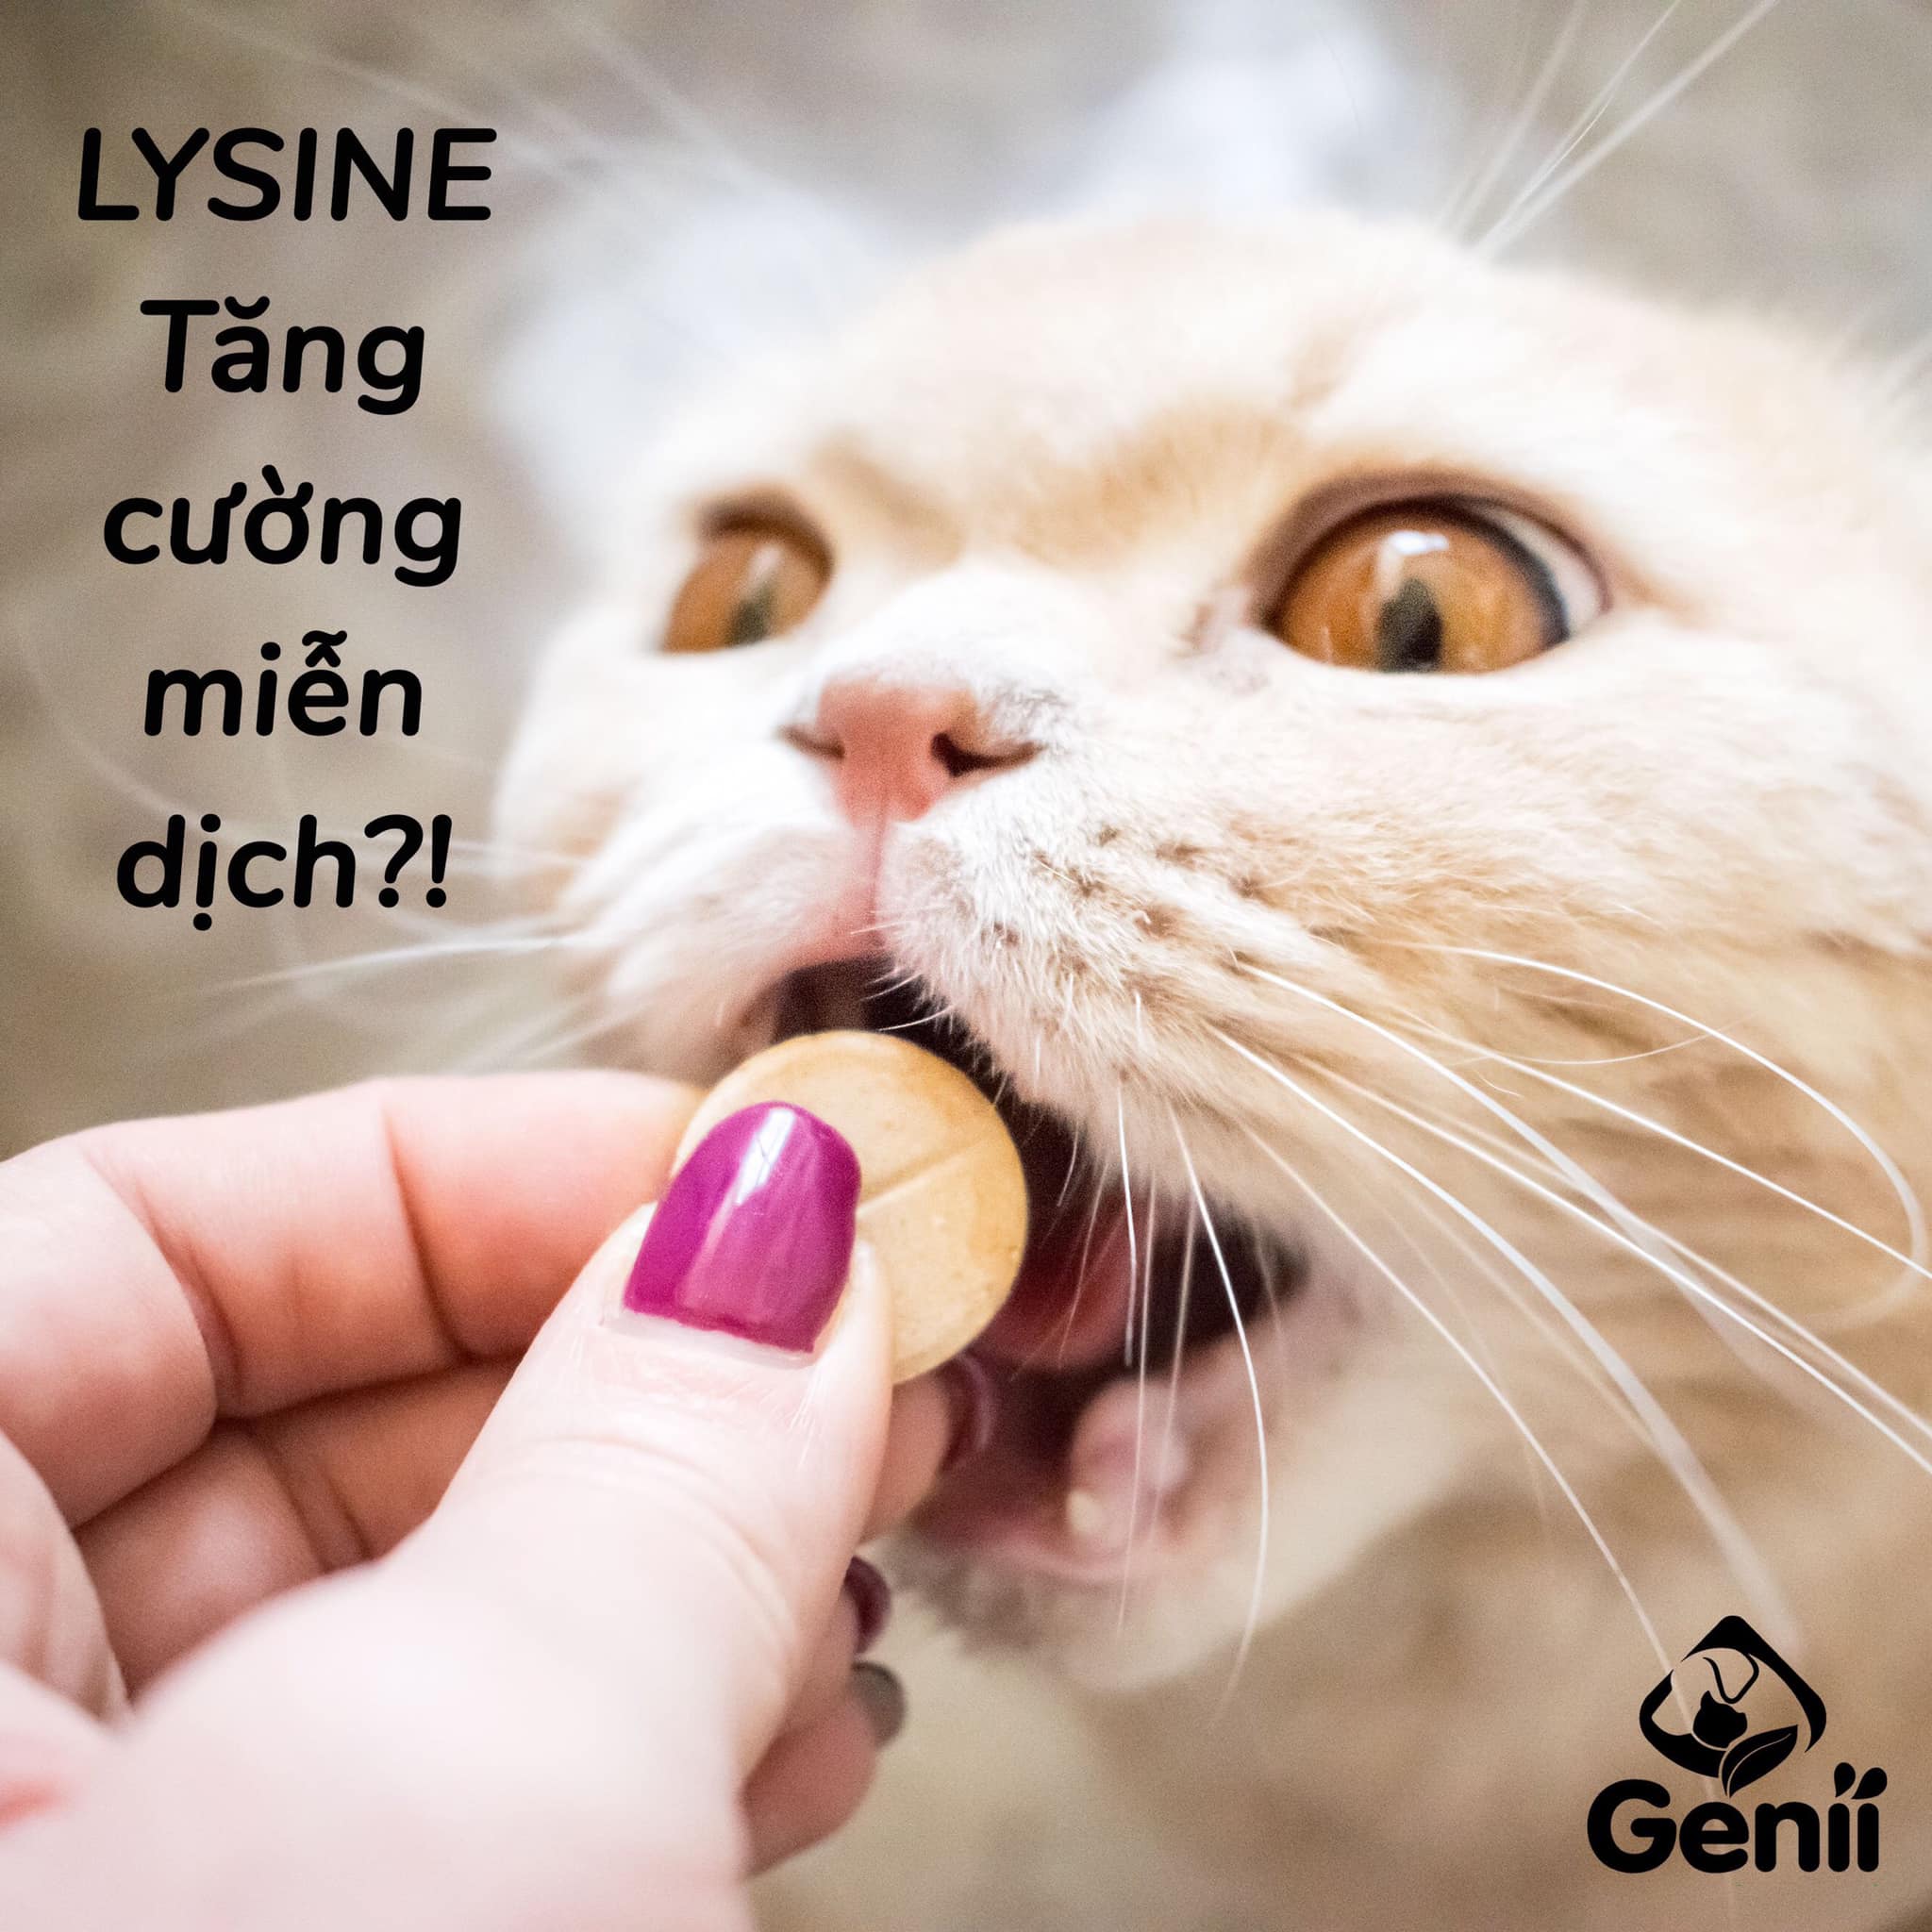 lysine cho mèo - lysine tăng miễn dịch cho mèo đúng hay sai?